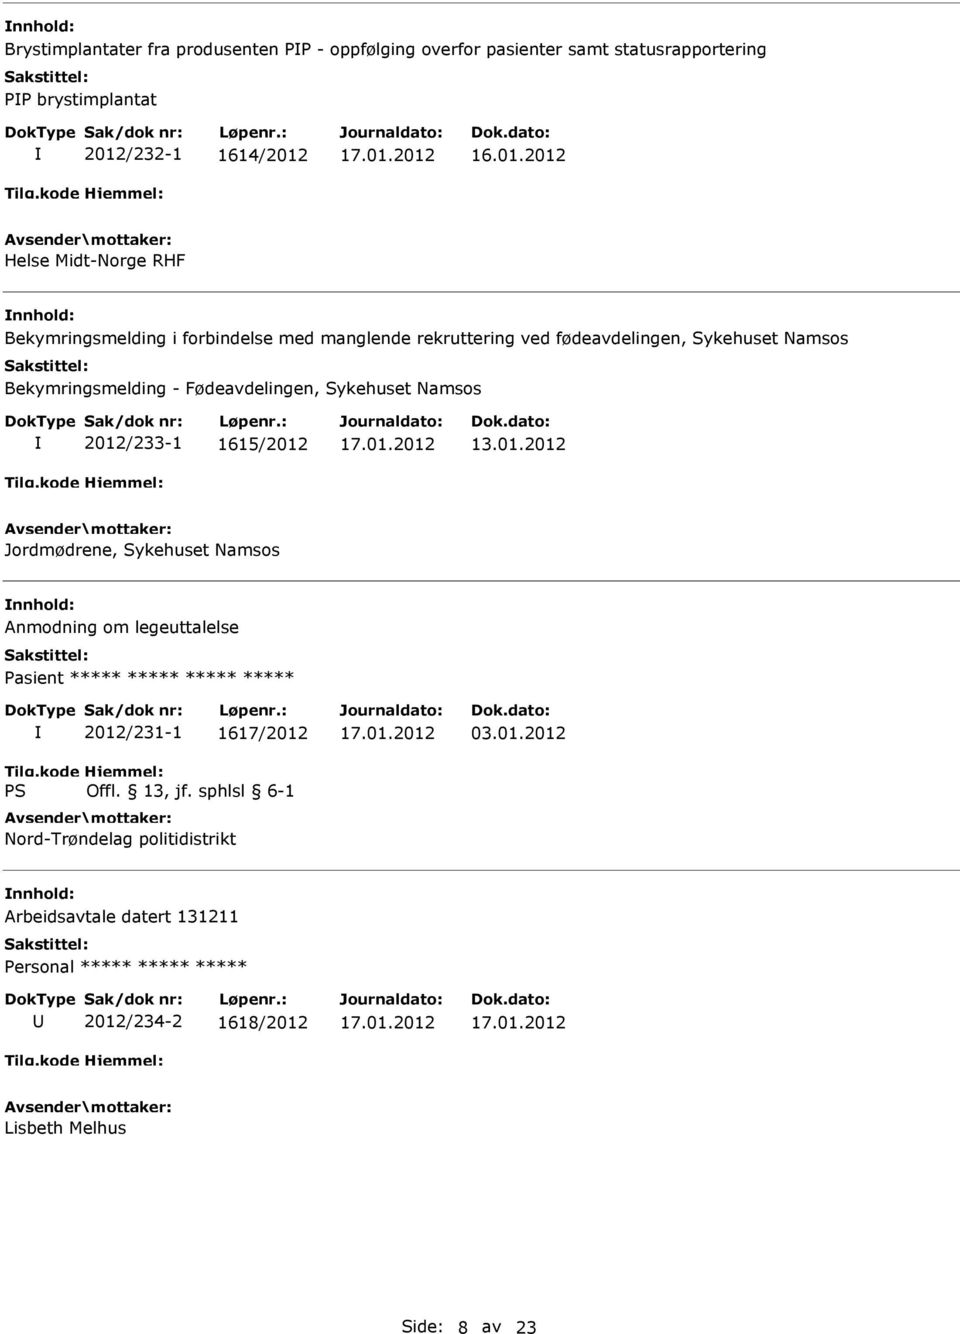 Bekymringsmelding - Fødeavdelingen, Sykehuset Namsos 2012/233-1 1615/2012 Jordmødrene, Sykehuset Namsos Anmodning om